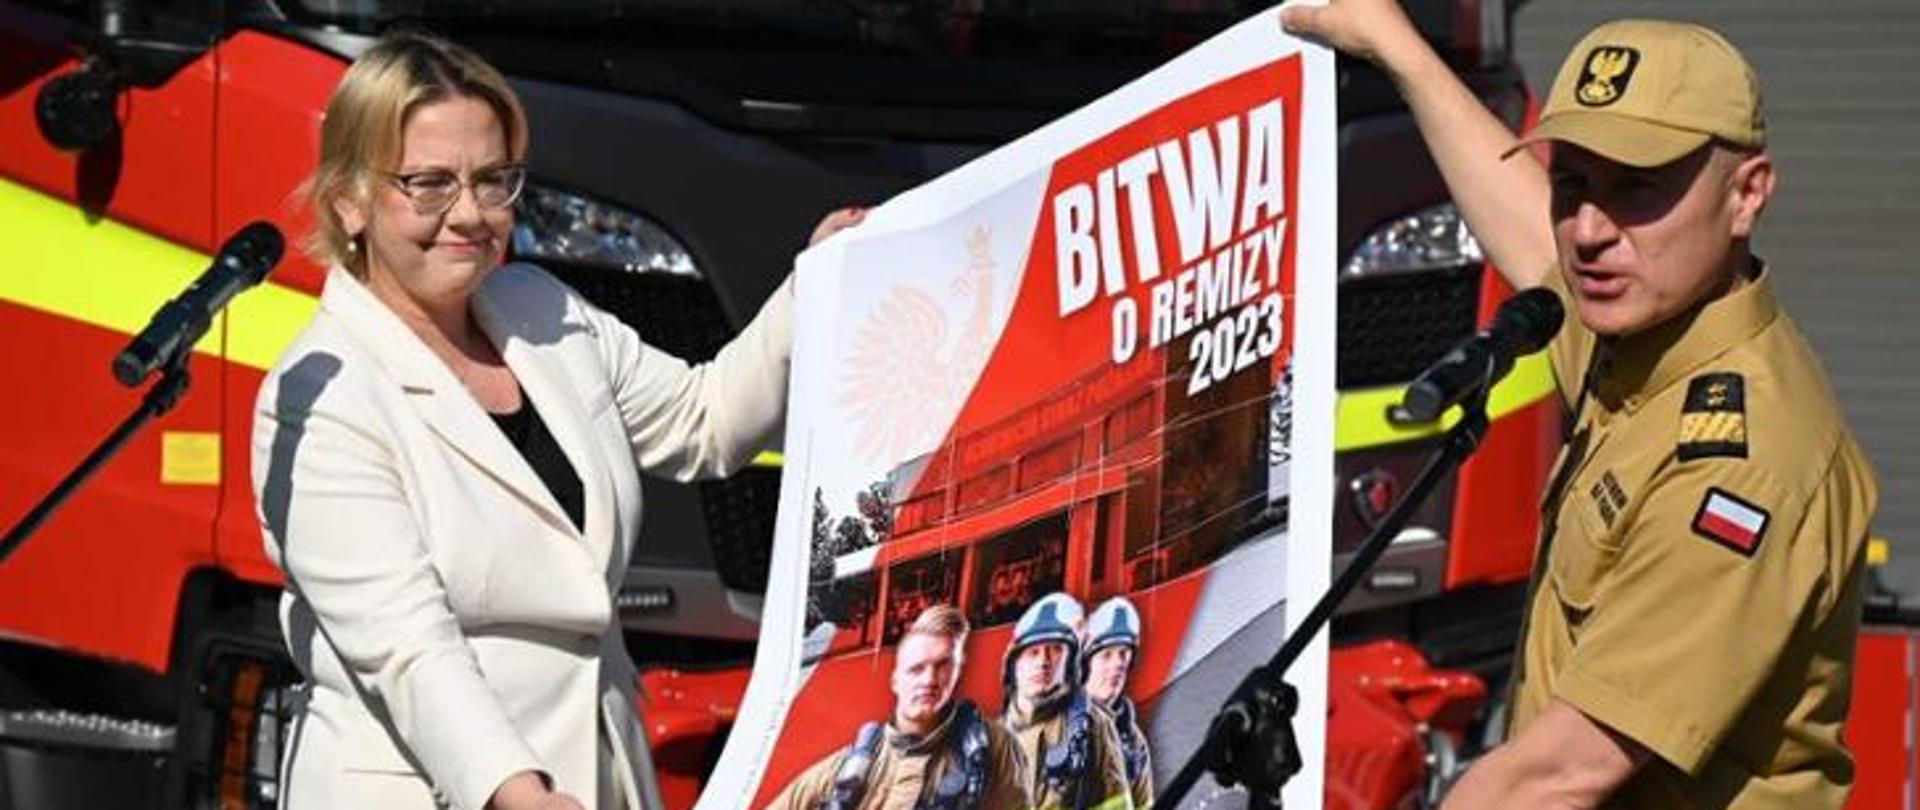 Kobieta i mężczyzna trzymają plakat z napisem bitwa o remizy 2023. W tle pojazd pożarniczy.